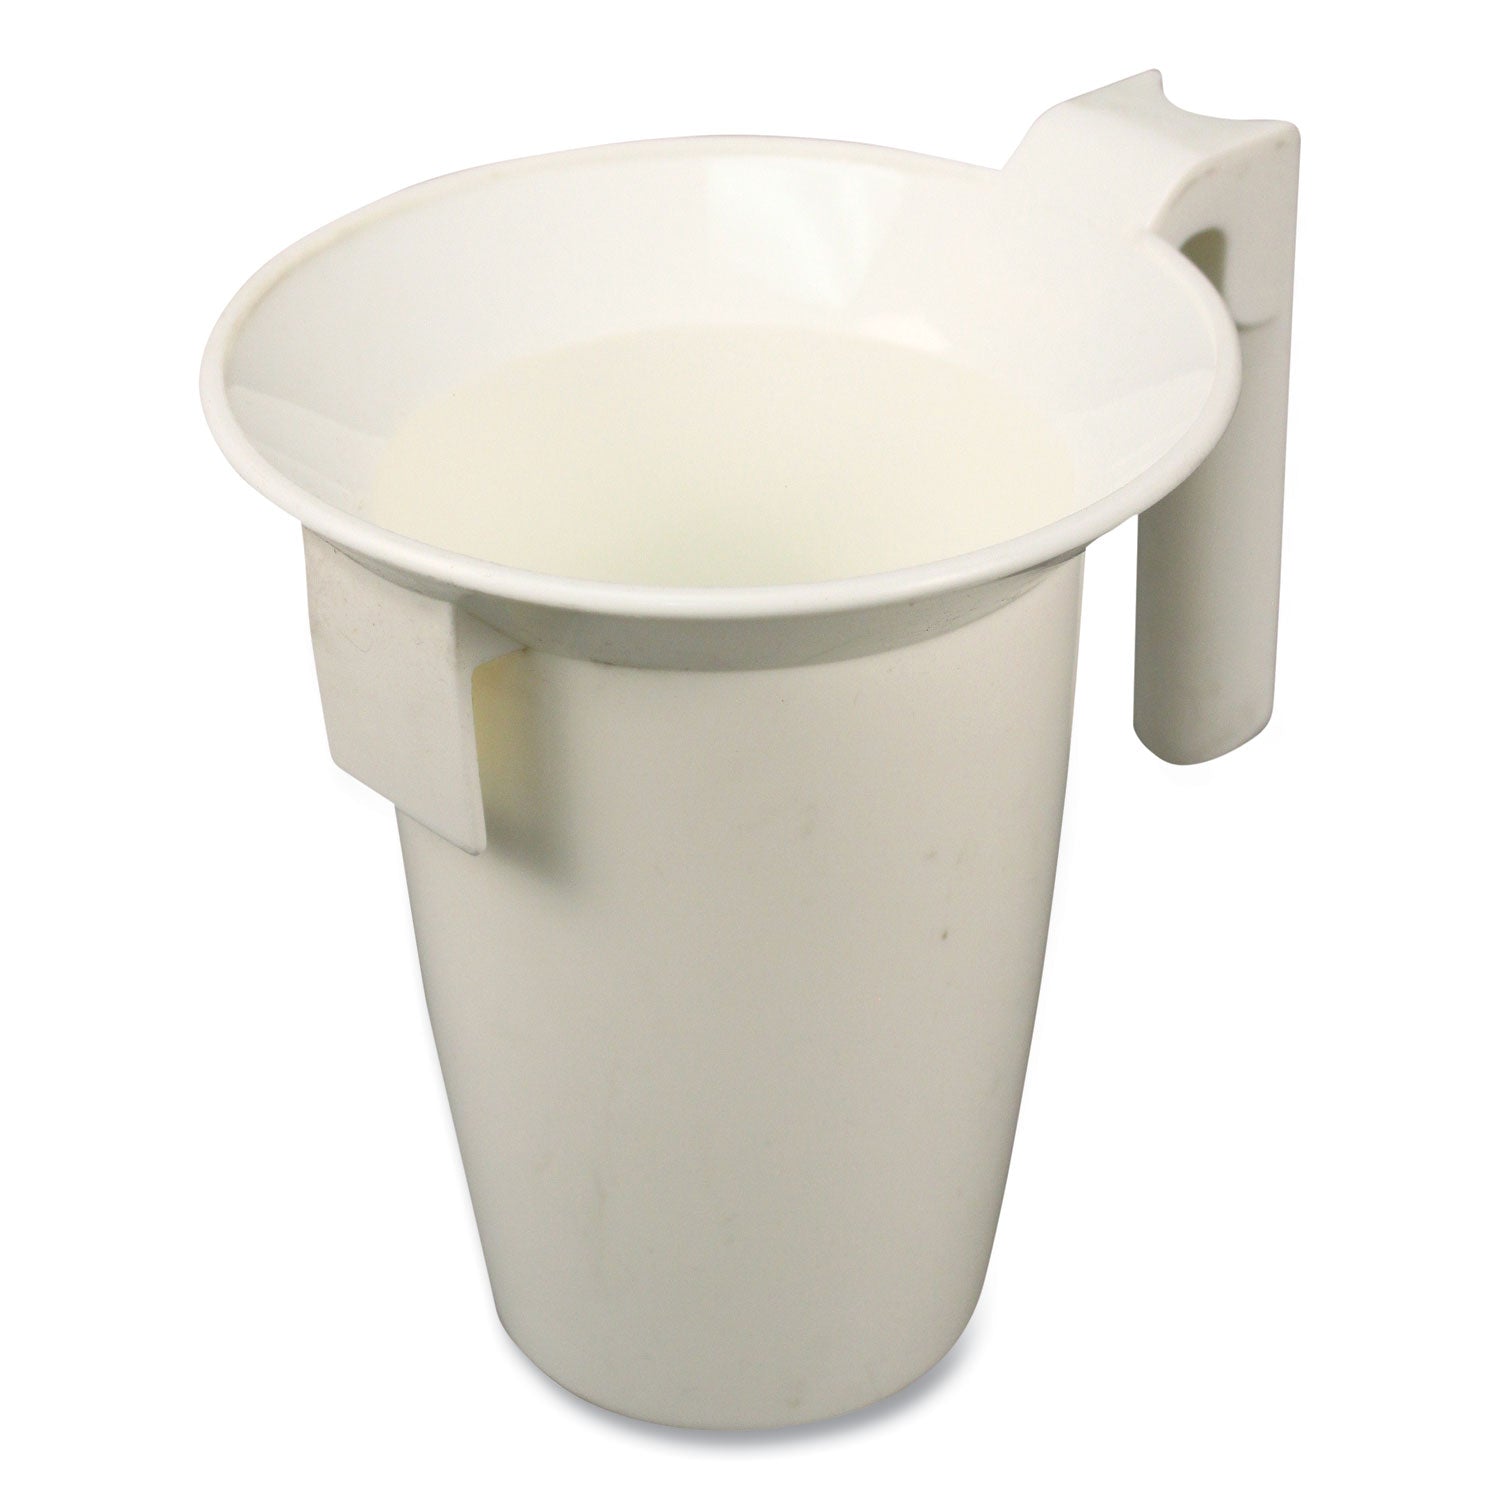 value-plus-toilet-bowl-caddy-white_imp150ea - 1